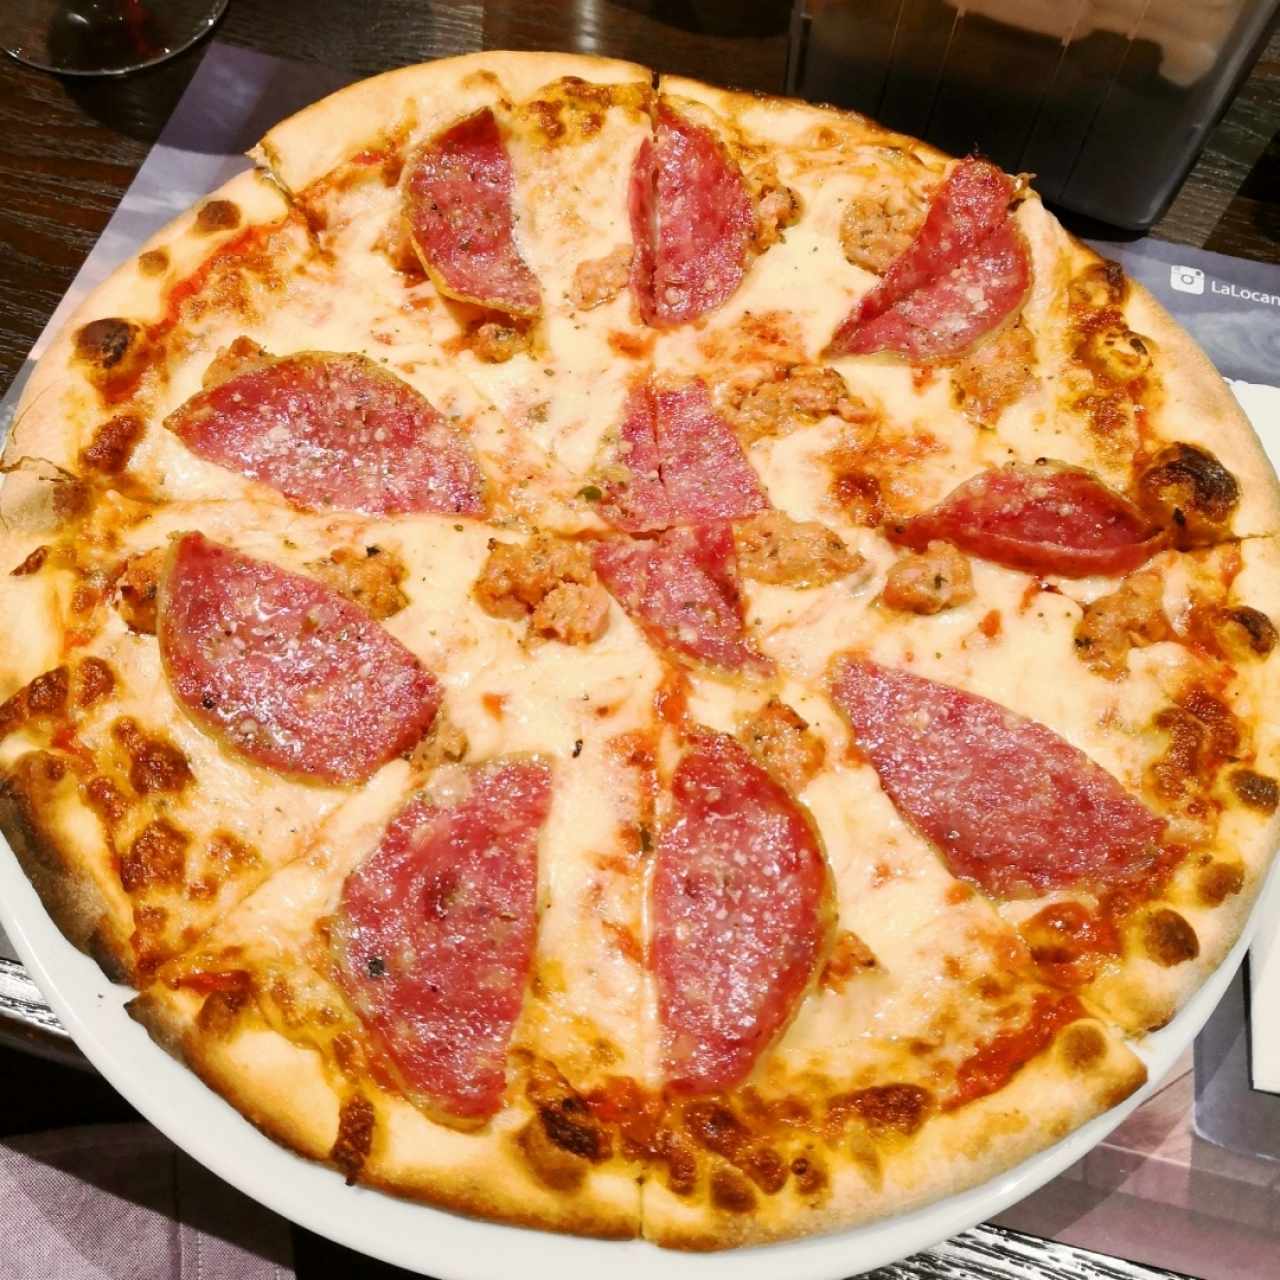 Pizza de salami y salchicha italiana